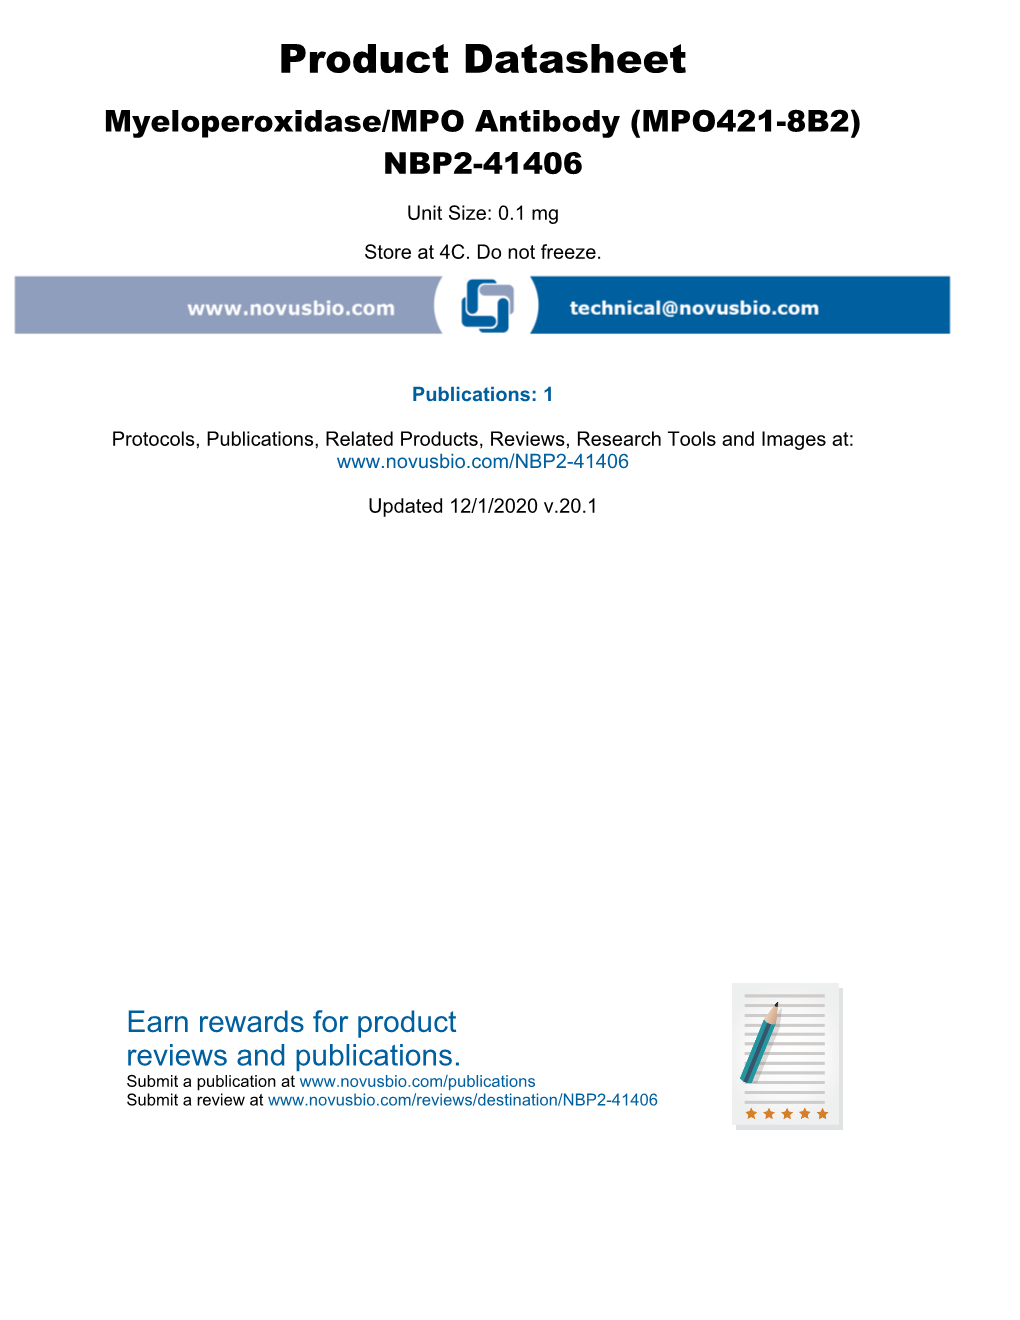 (Mpo421-8B2) Nbp2-41406